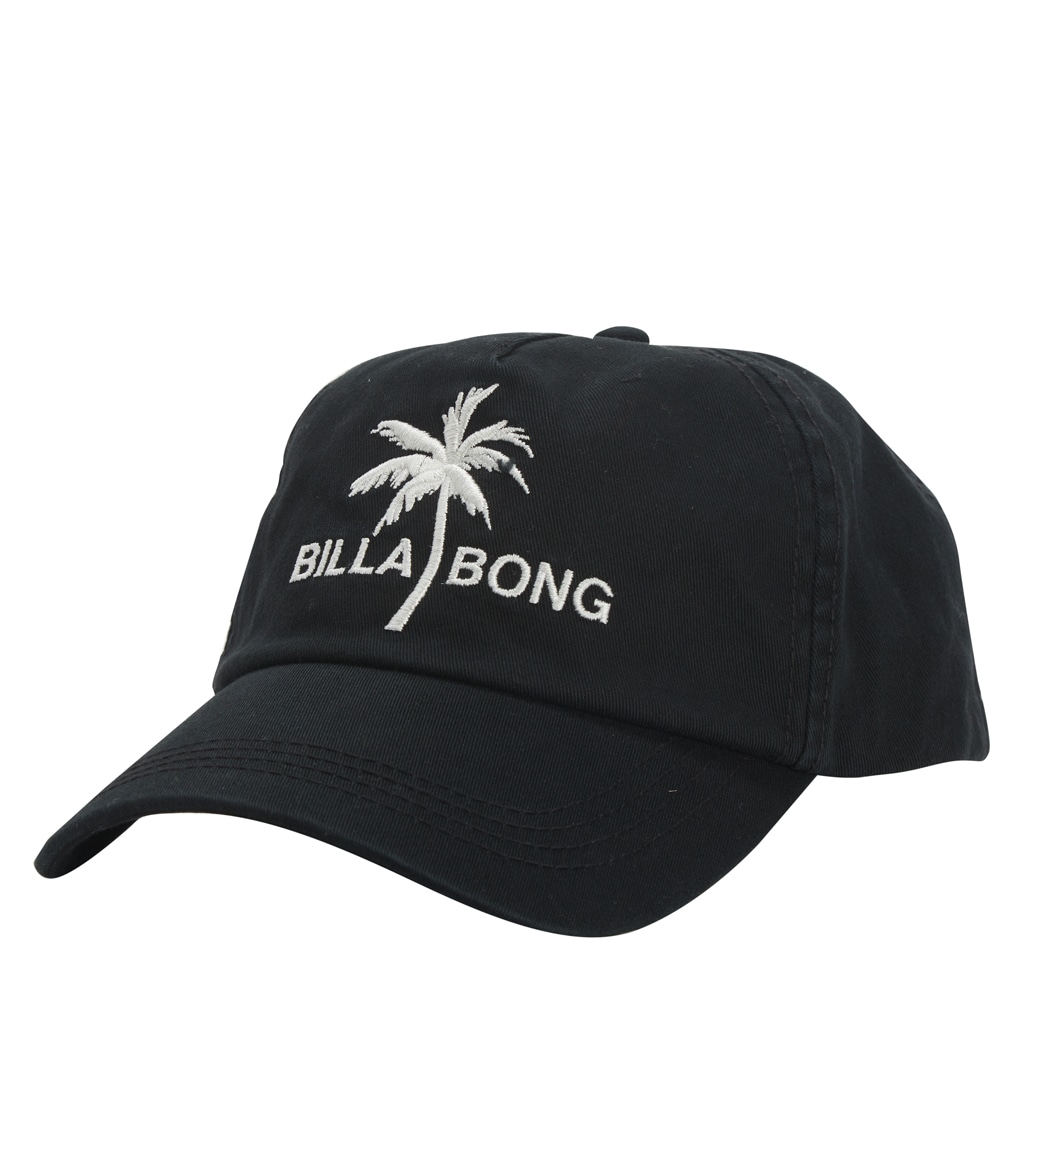 Billabong Surf Club Cap - Antique Black One Size Cotton - Swimoutlet.com